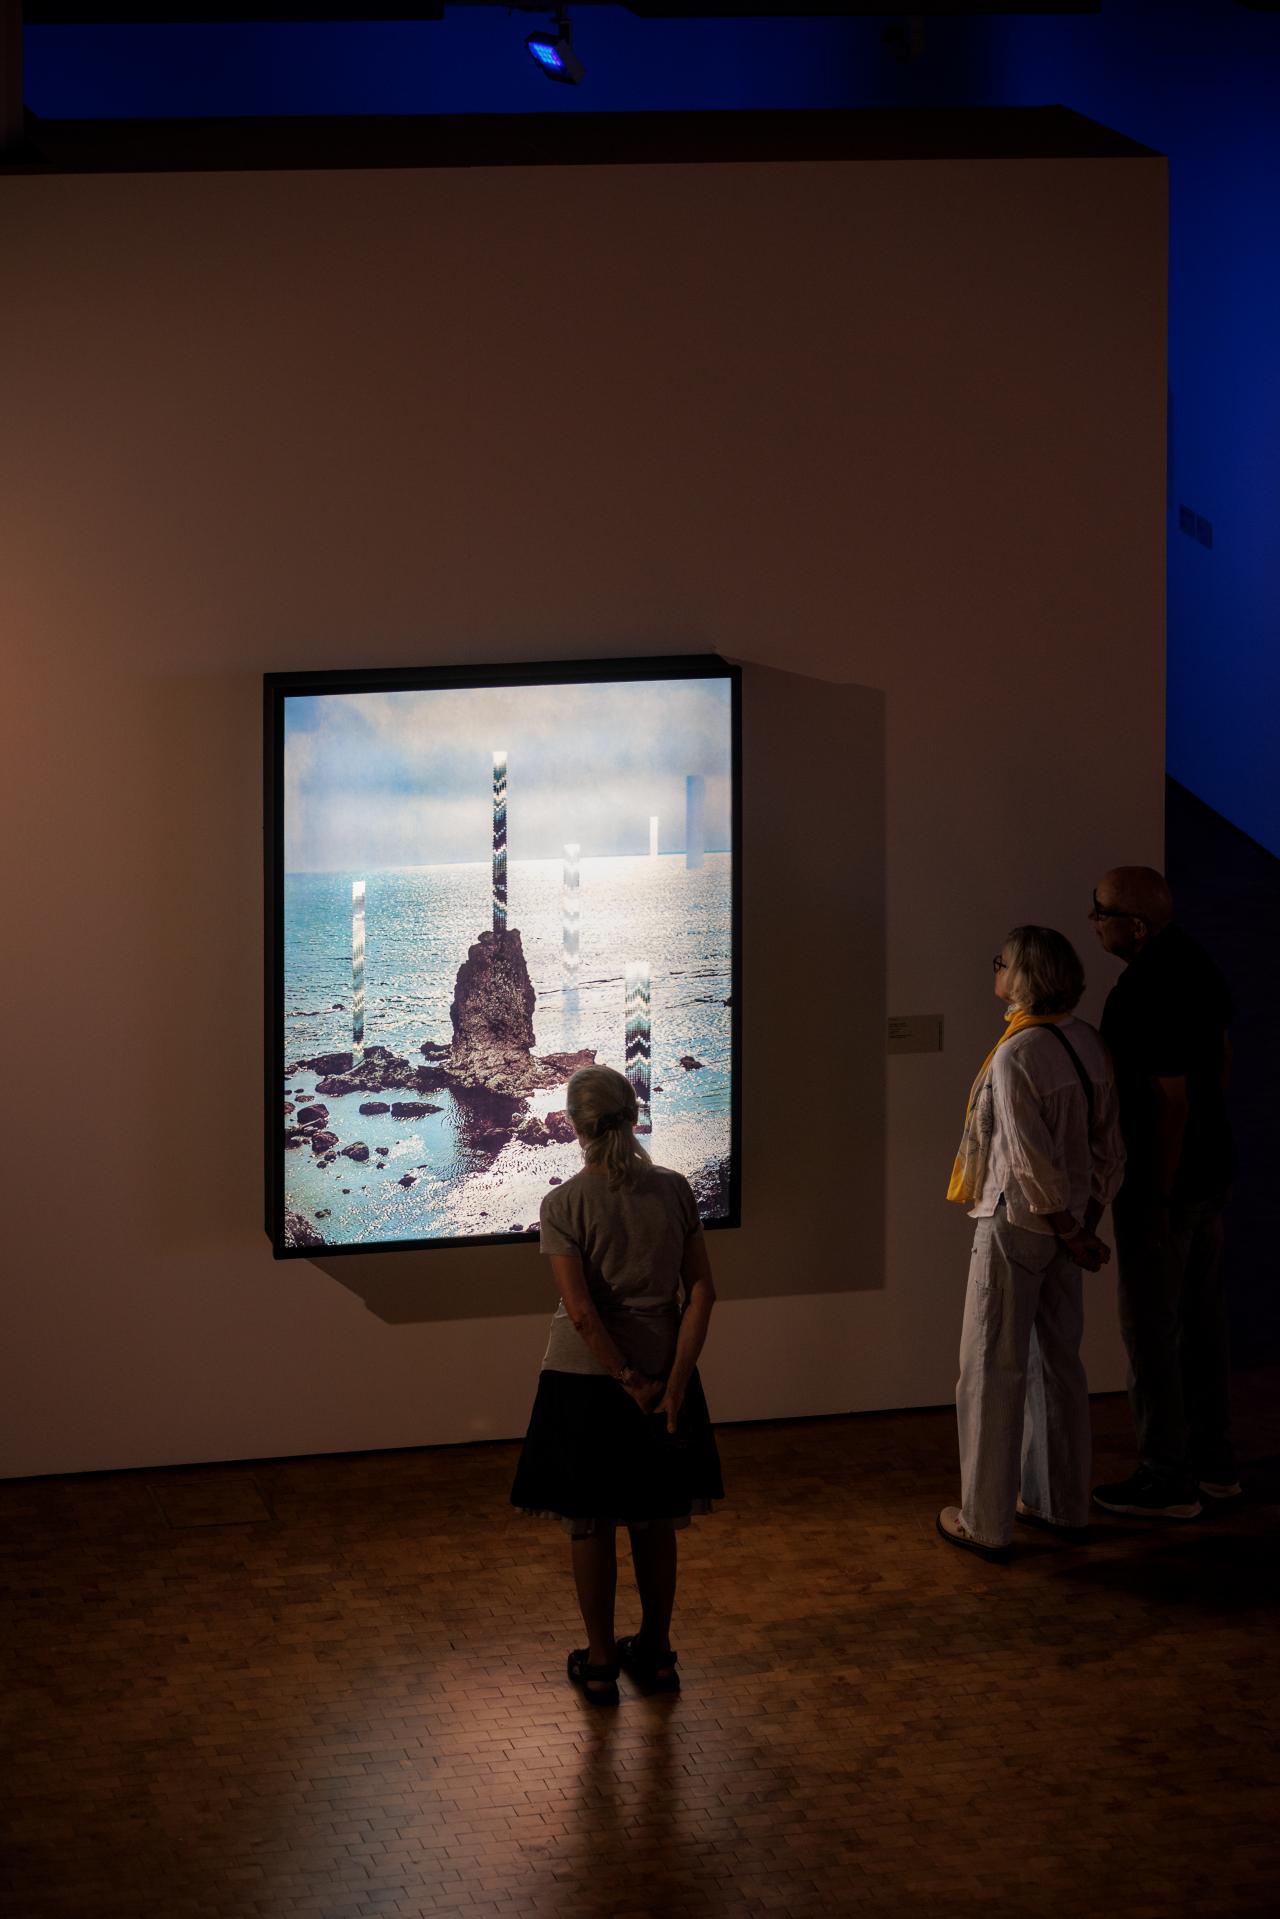 Zu sehen sind drei Menschen, die sich ein Kunstwerk anschauen, welches an der Wand hängt. Auf dem Kunstwerk zu sehen ist etwas, das an einen Eisberg in der Arktis erinnert.